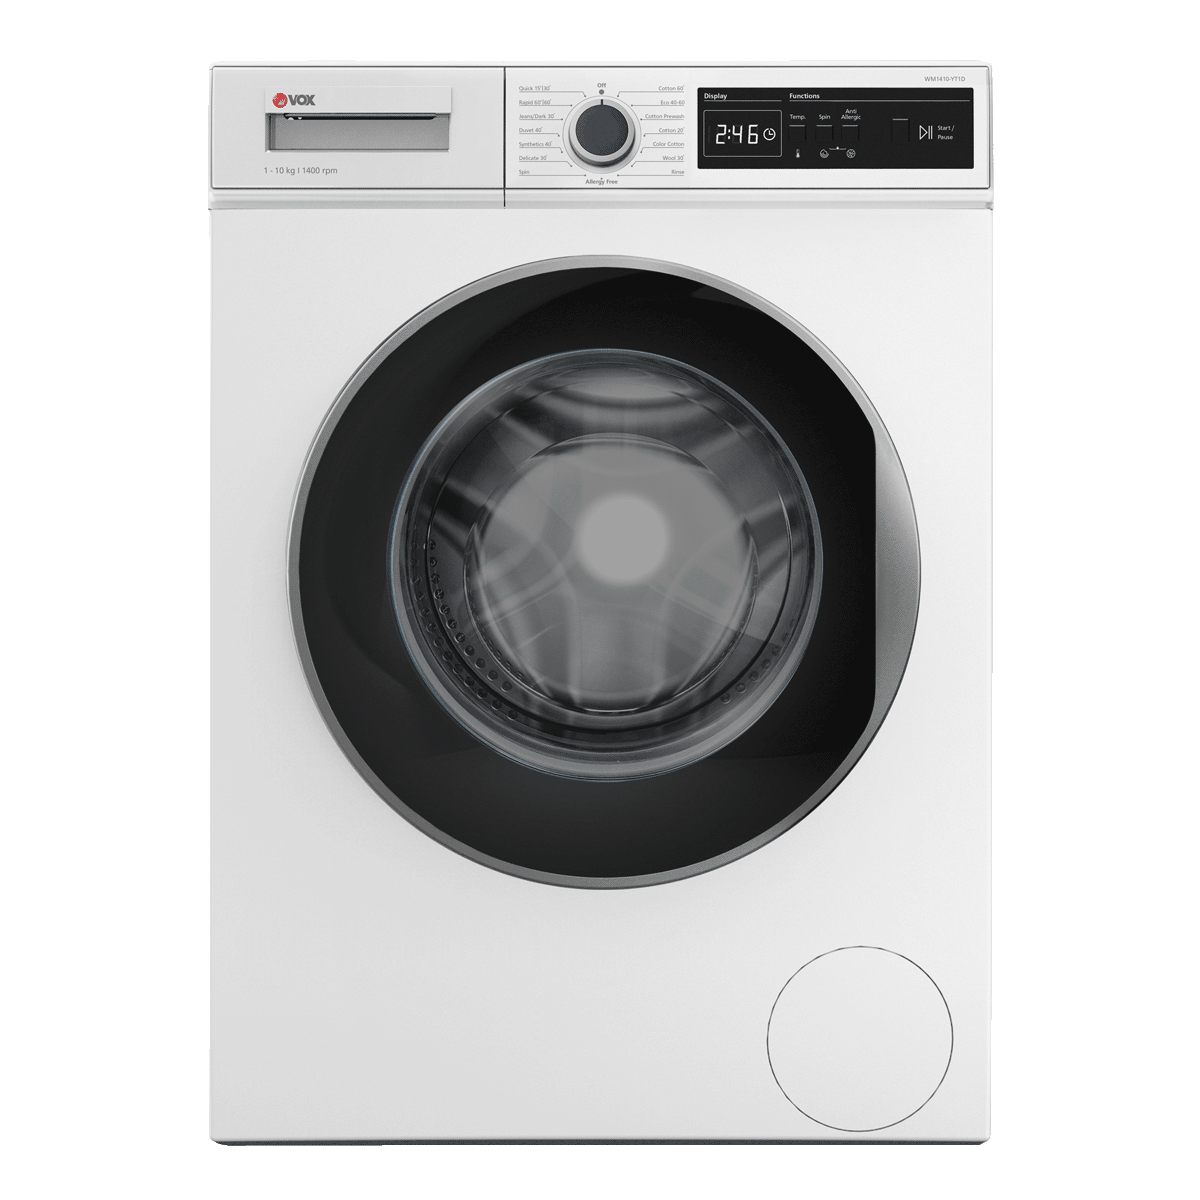 Washing machine WM1410-YT1D 